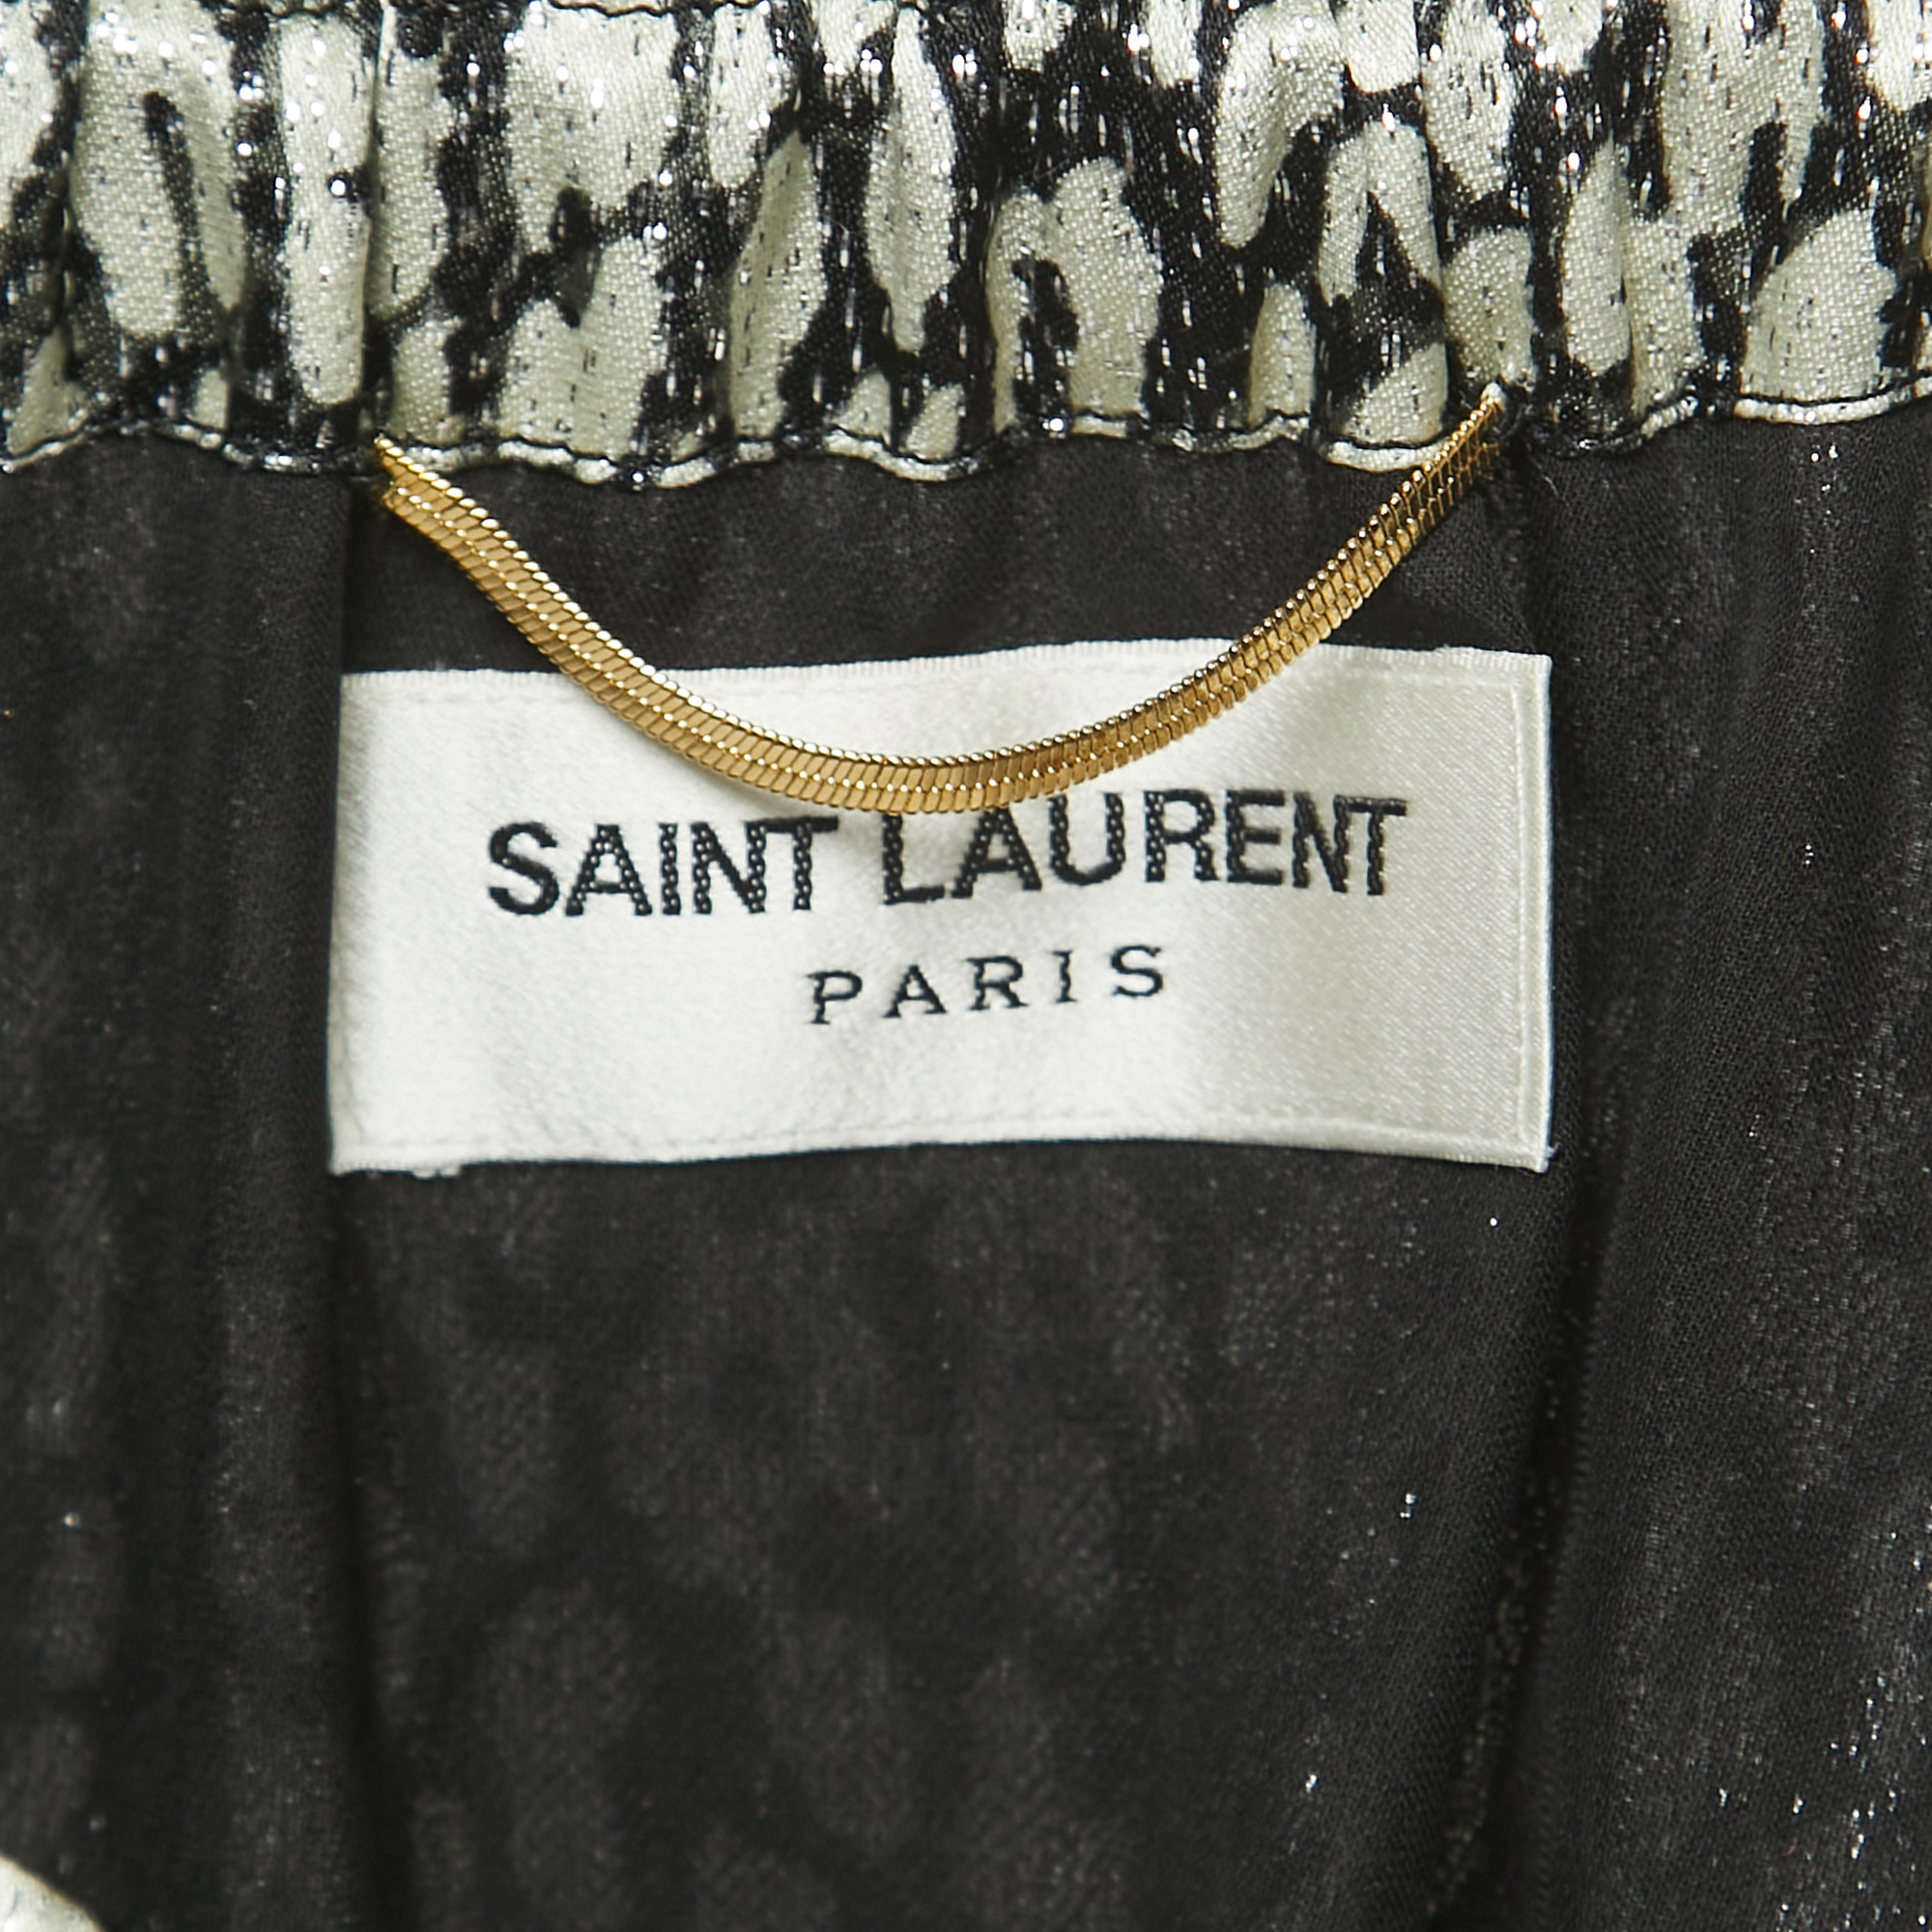 Saint Laurent Paris Black/Metallic Animal Printed Lame Off-Shoulder Mini Dress S